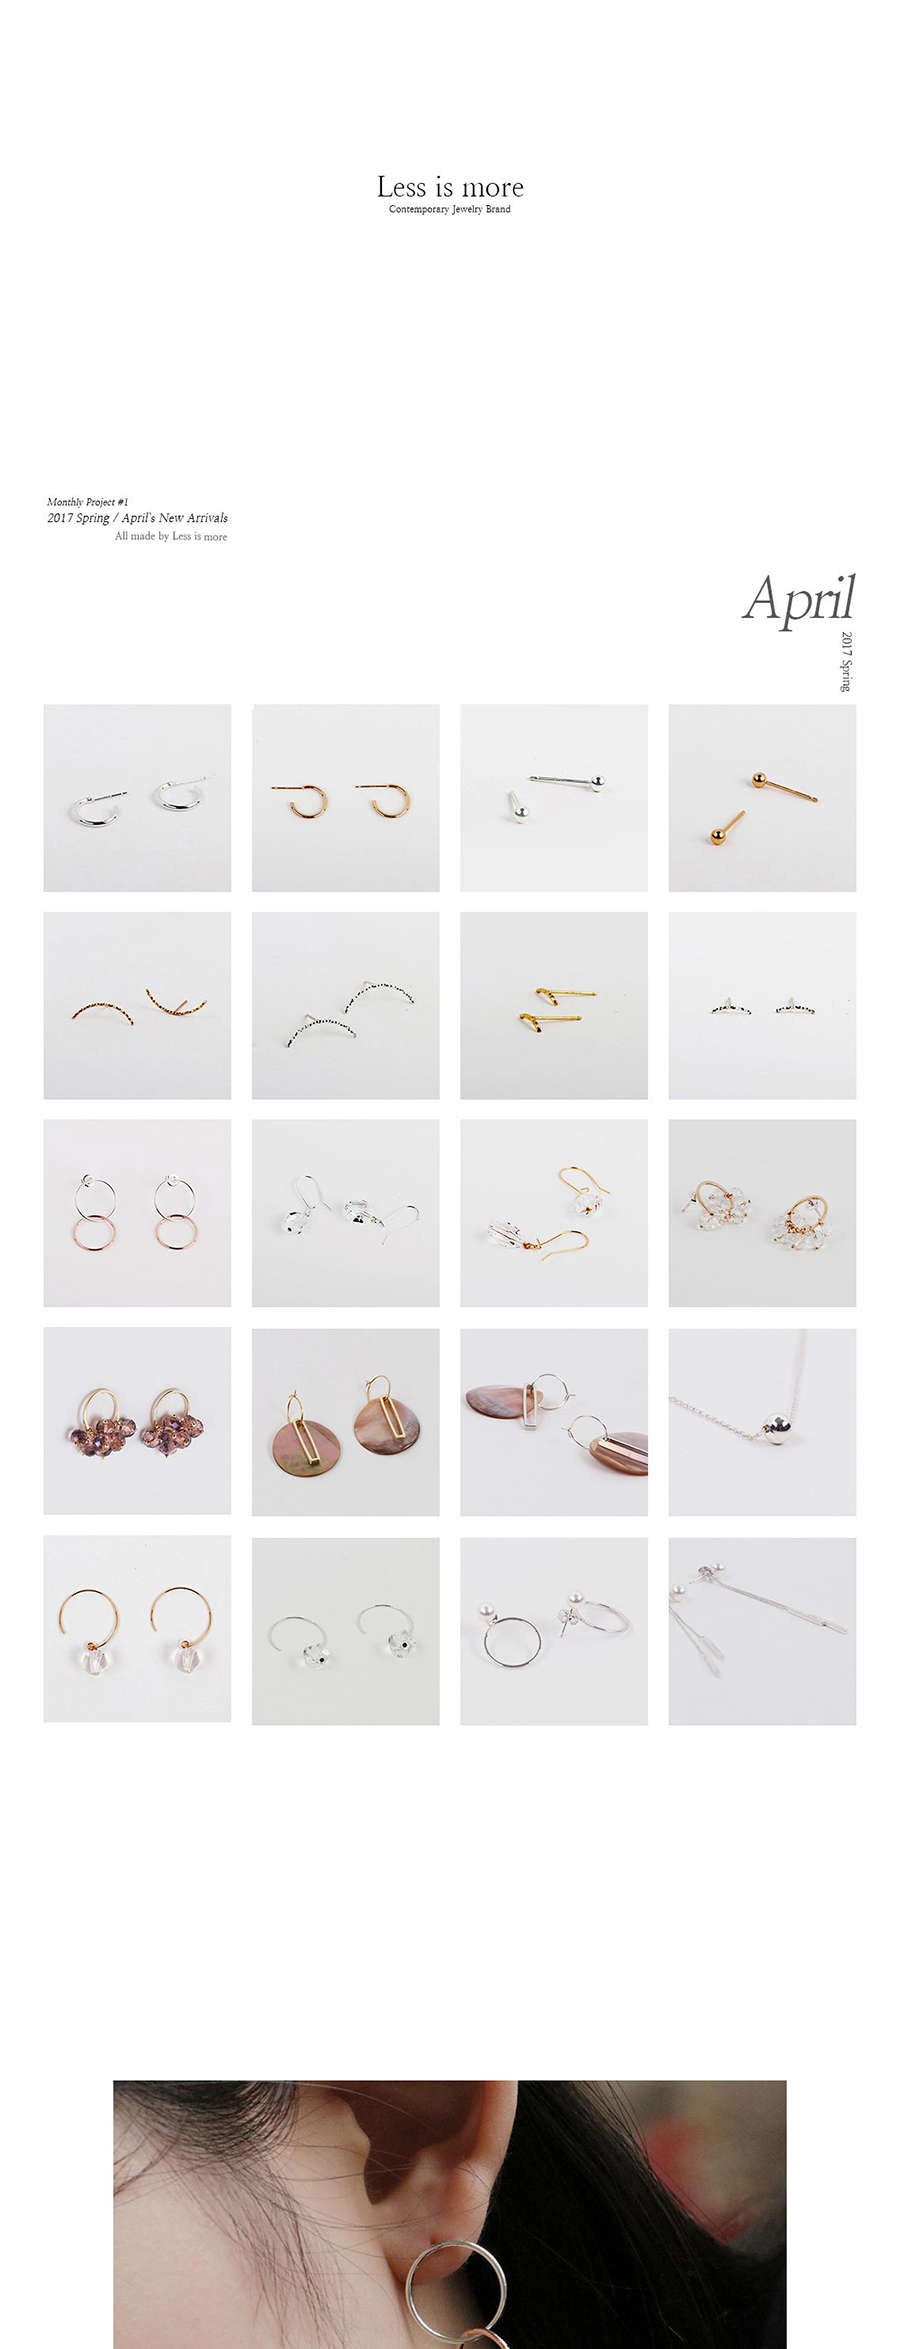 silver rose gold ring earring 34,000원 - 레스이즈모어 이동요망, X주얼리/시계, 귀걸이, 실버 바보사랑 silver rose gold ring earring 34,000원 - 레스이즈모어 이동요망, X주얼리/시계, 귀걸이, 실버 바보사랑